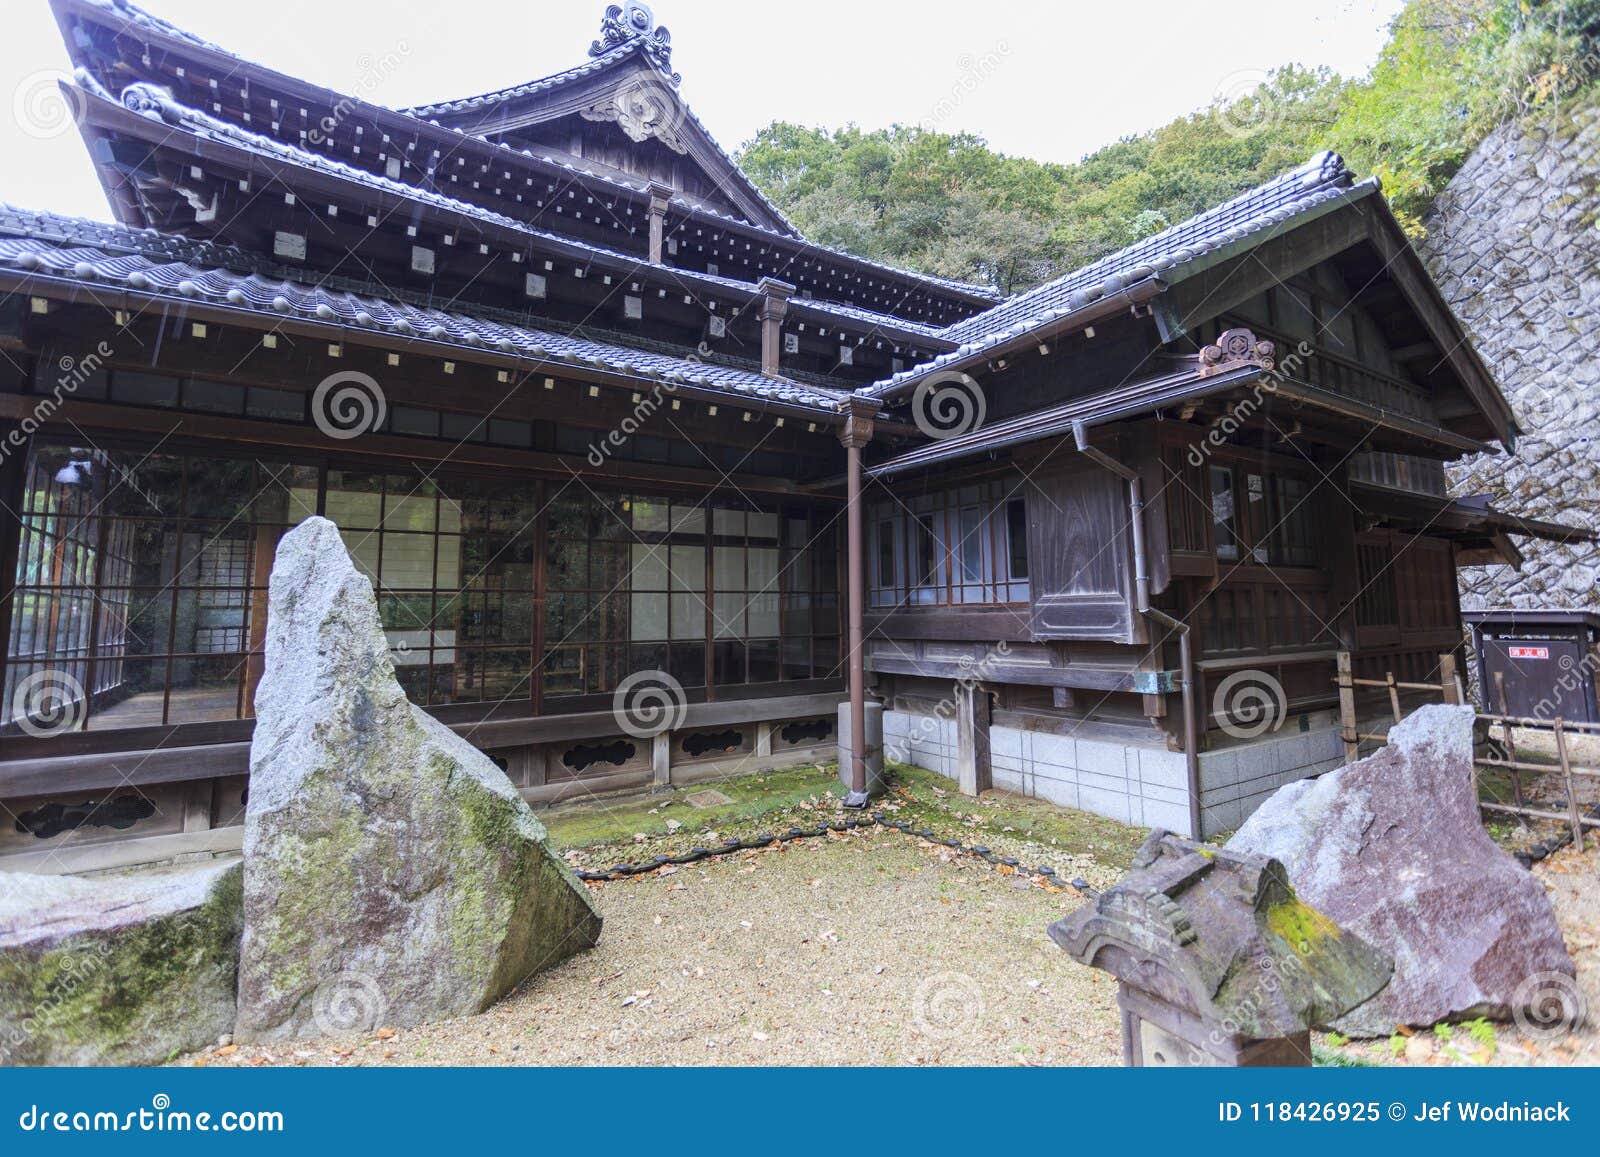 Traditional Japanese House In Kawasaki Stock Image Image Of Shirakawa Kyoto 118426925